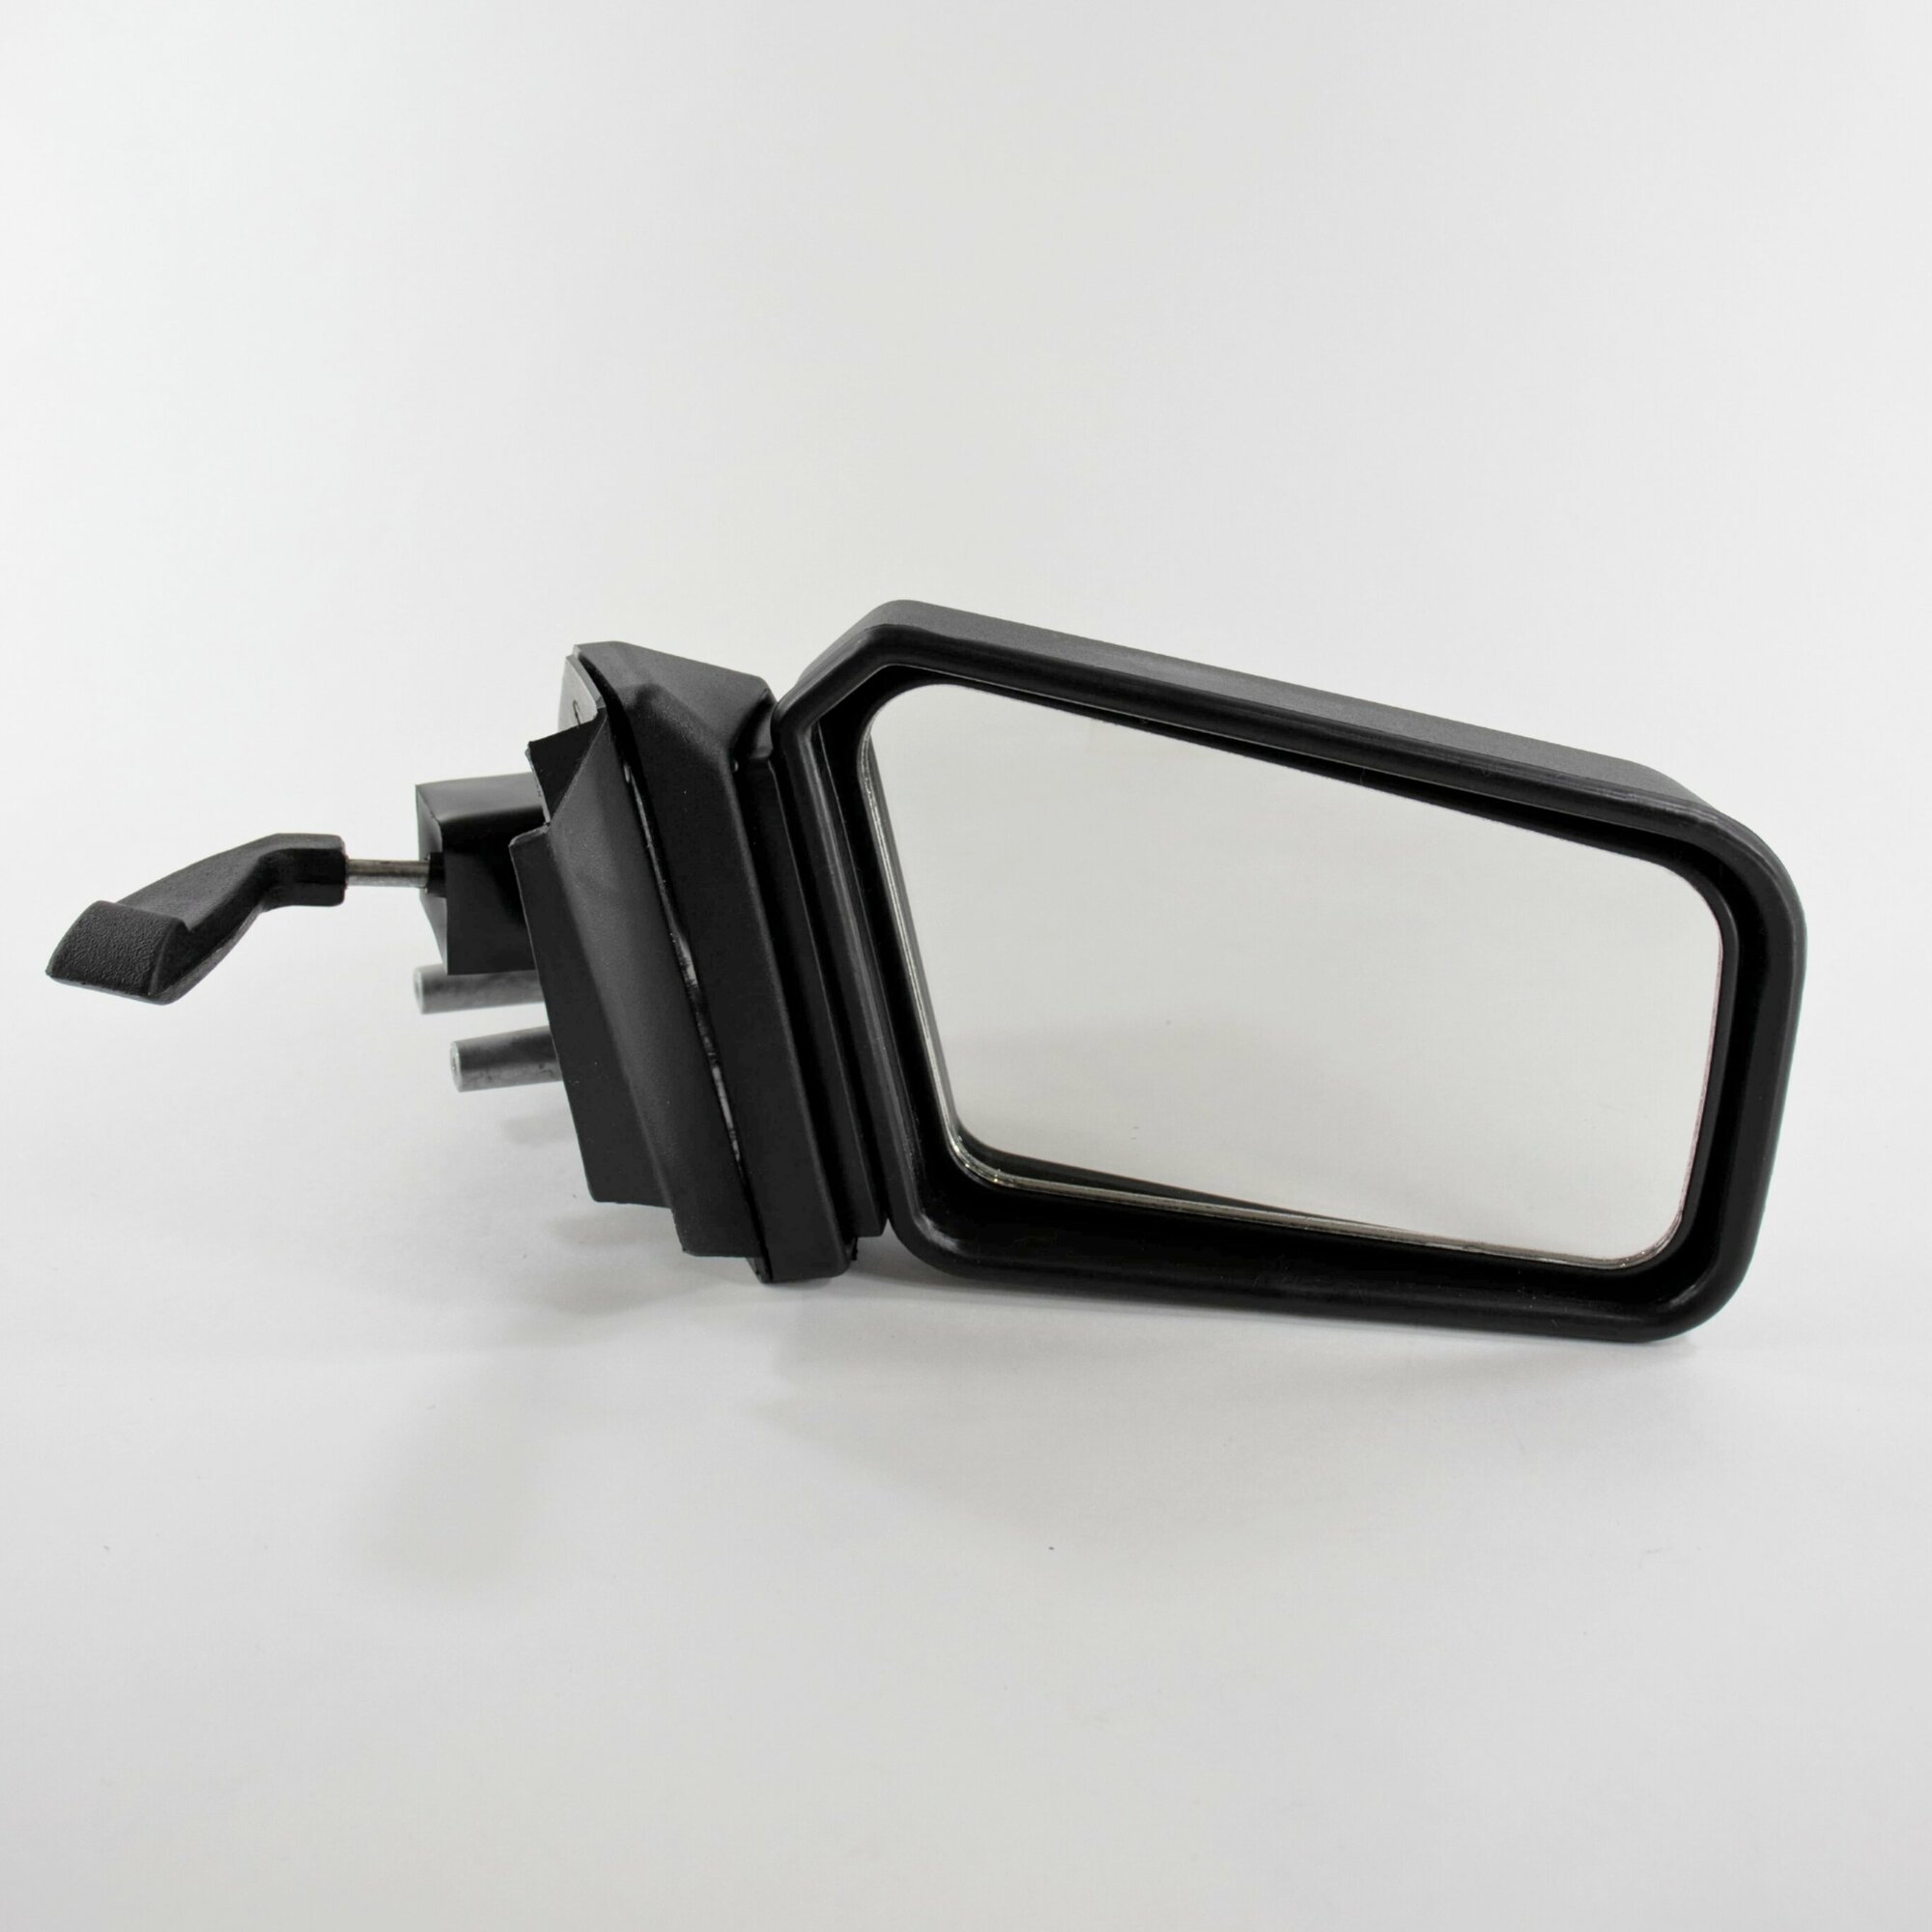 Зеркало заднего вида для автомобилей ВАЗ 2108 2109 21099 2113 2114 2115 наружное правое с механической регулировкой и металлическим кронштейном